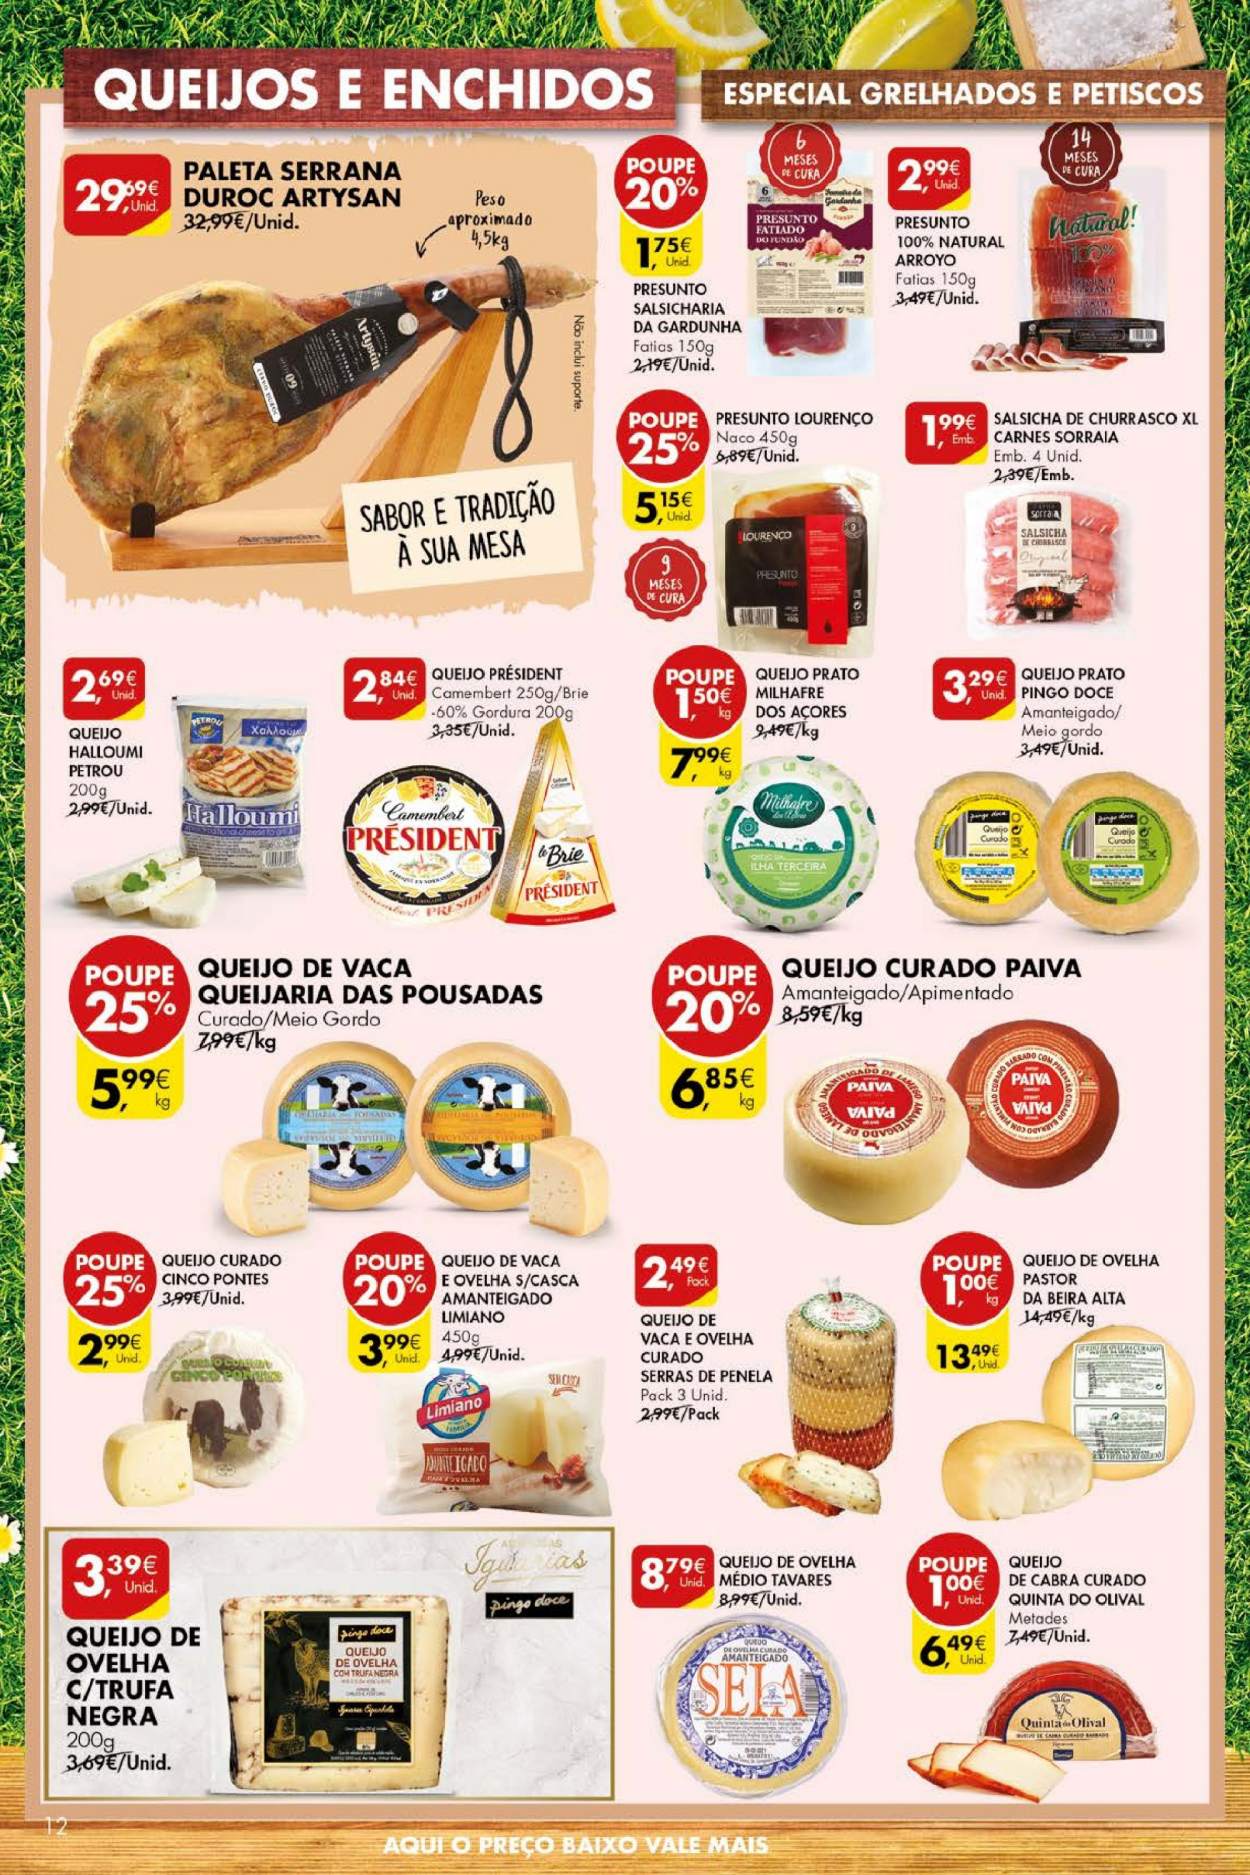 thumbnail - Folheto Pingo Doce - 4.5.2021 - 10.5.2021 - Produtos em promoção - presunto, salsicha, queijo, halloumi, queijo prato, queijo brie, camembert, gin, prato, mesa. Página 12.